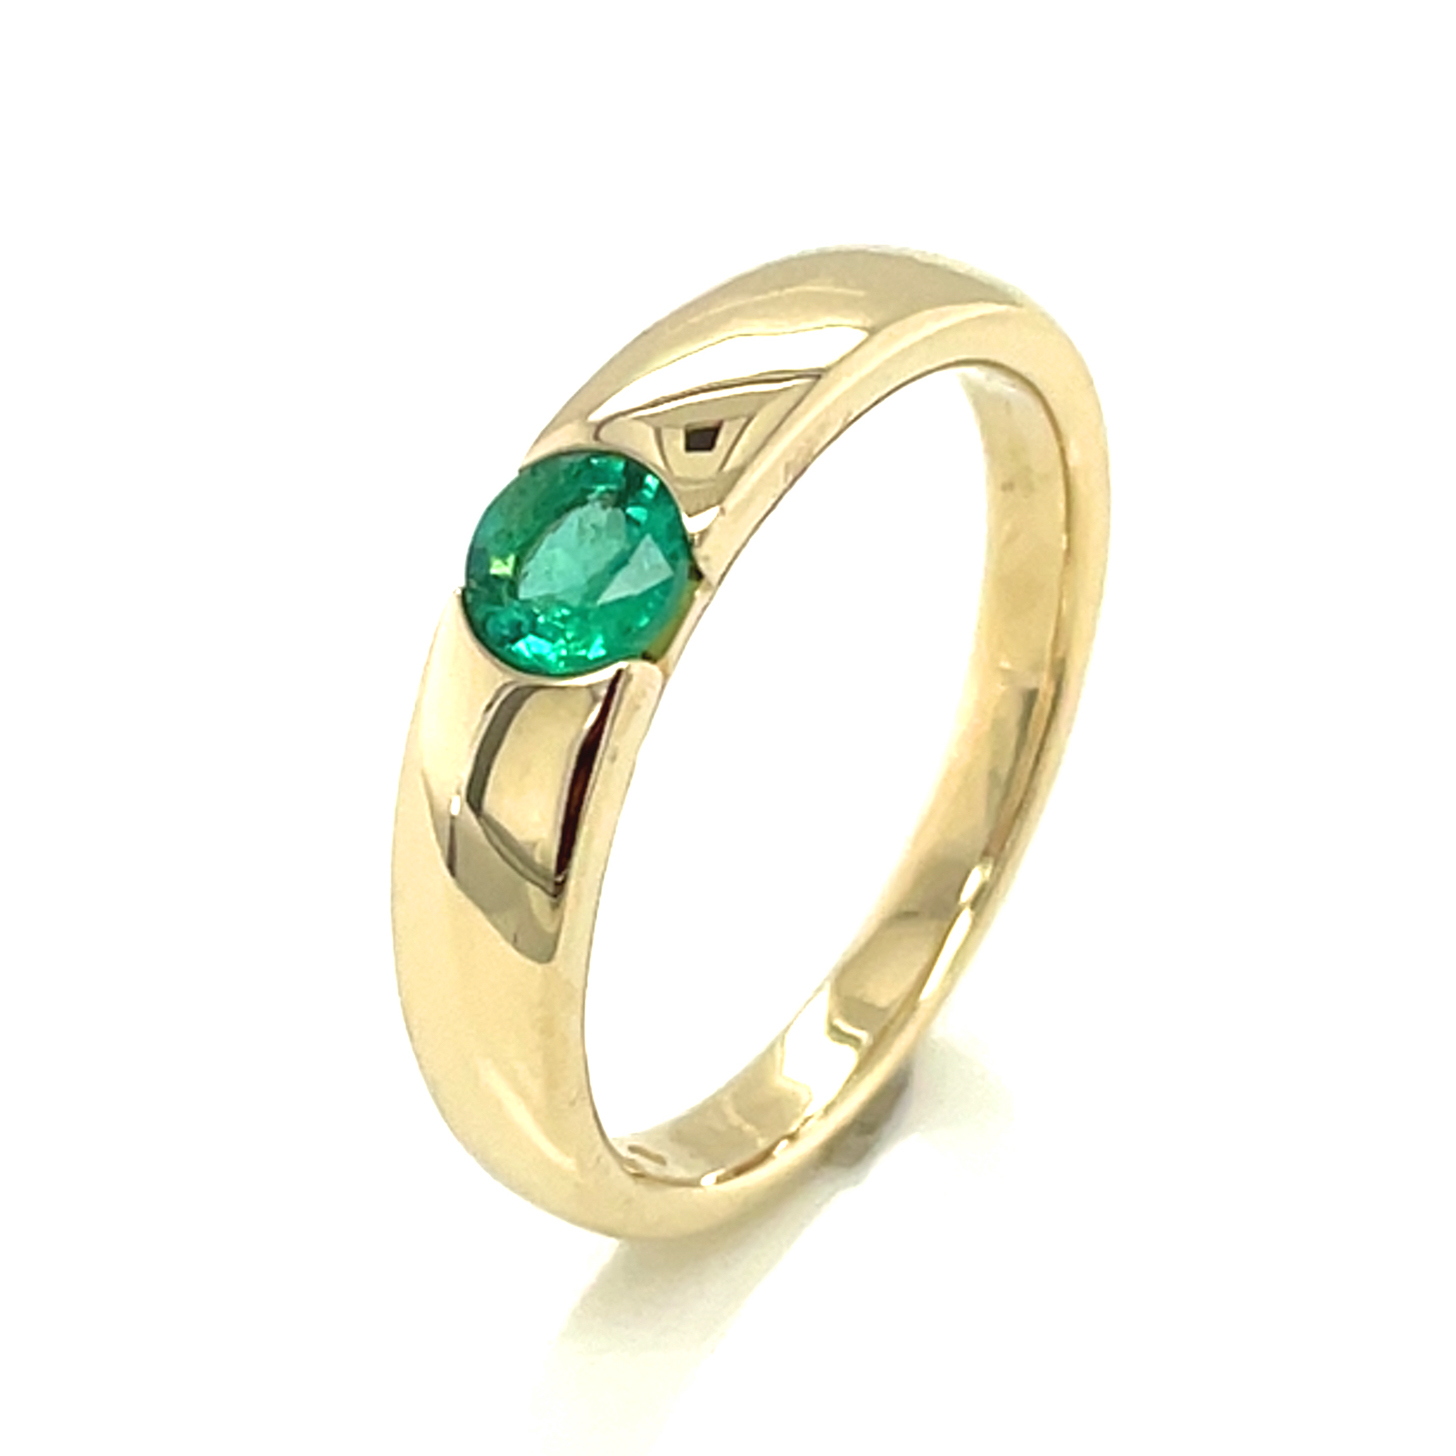 Smaragd, grün, rund facettiert, ca. 0,26 ct. Edelstein Ring Gelbgold 375/000 Sogni d´oro Facettenreich